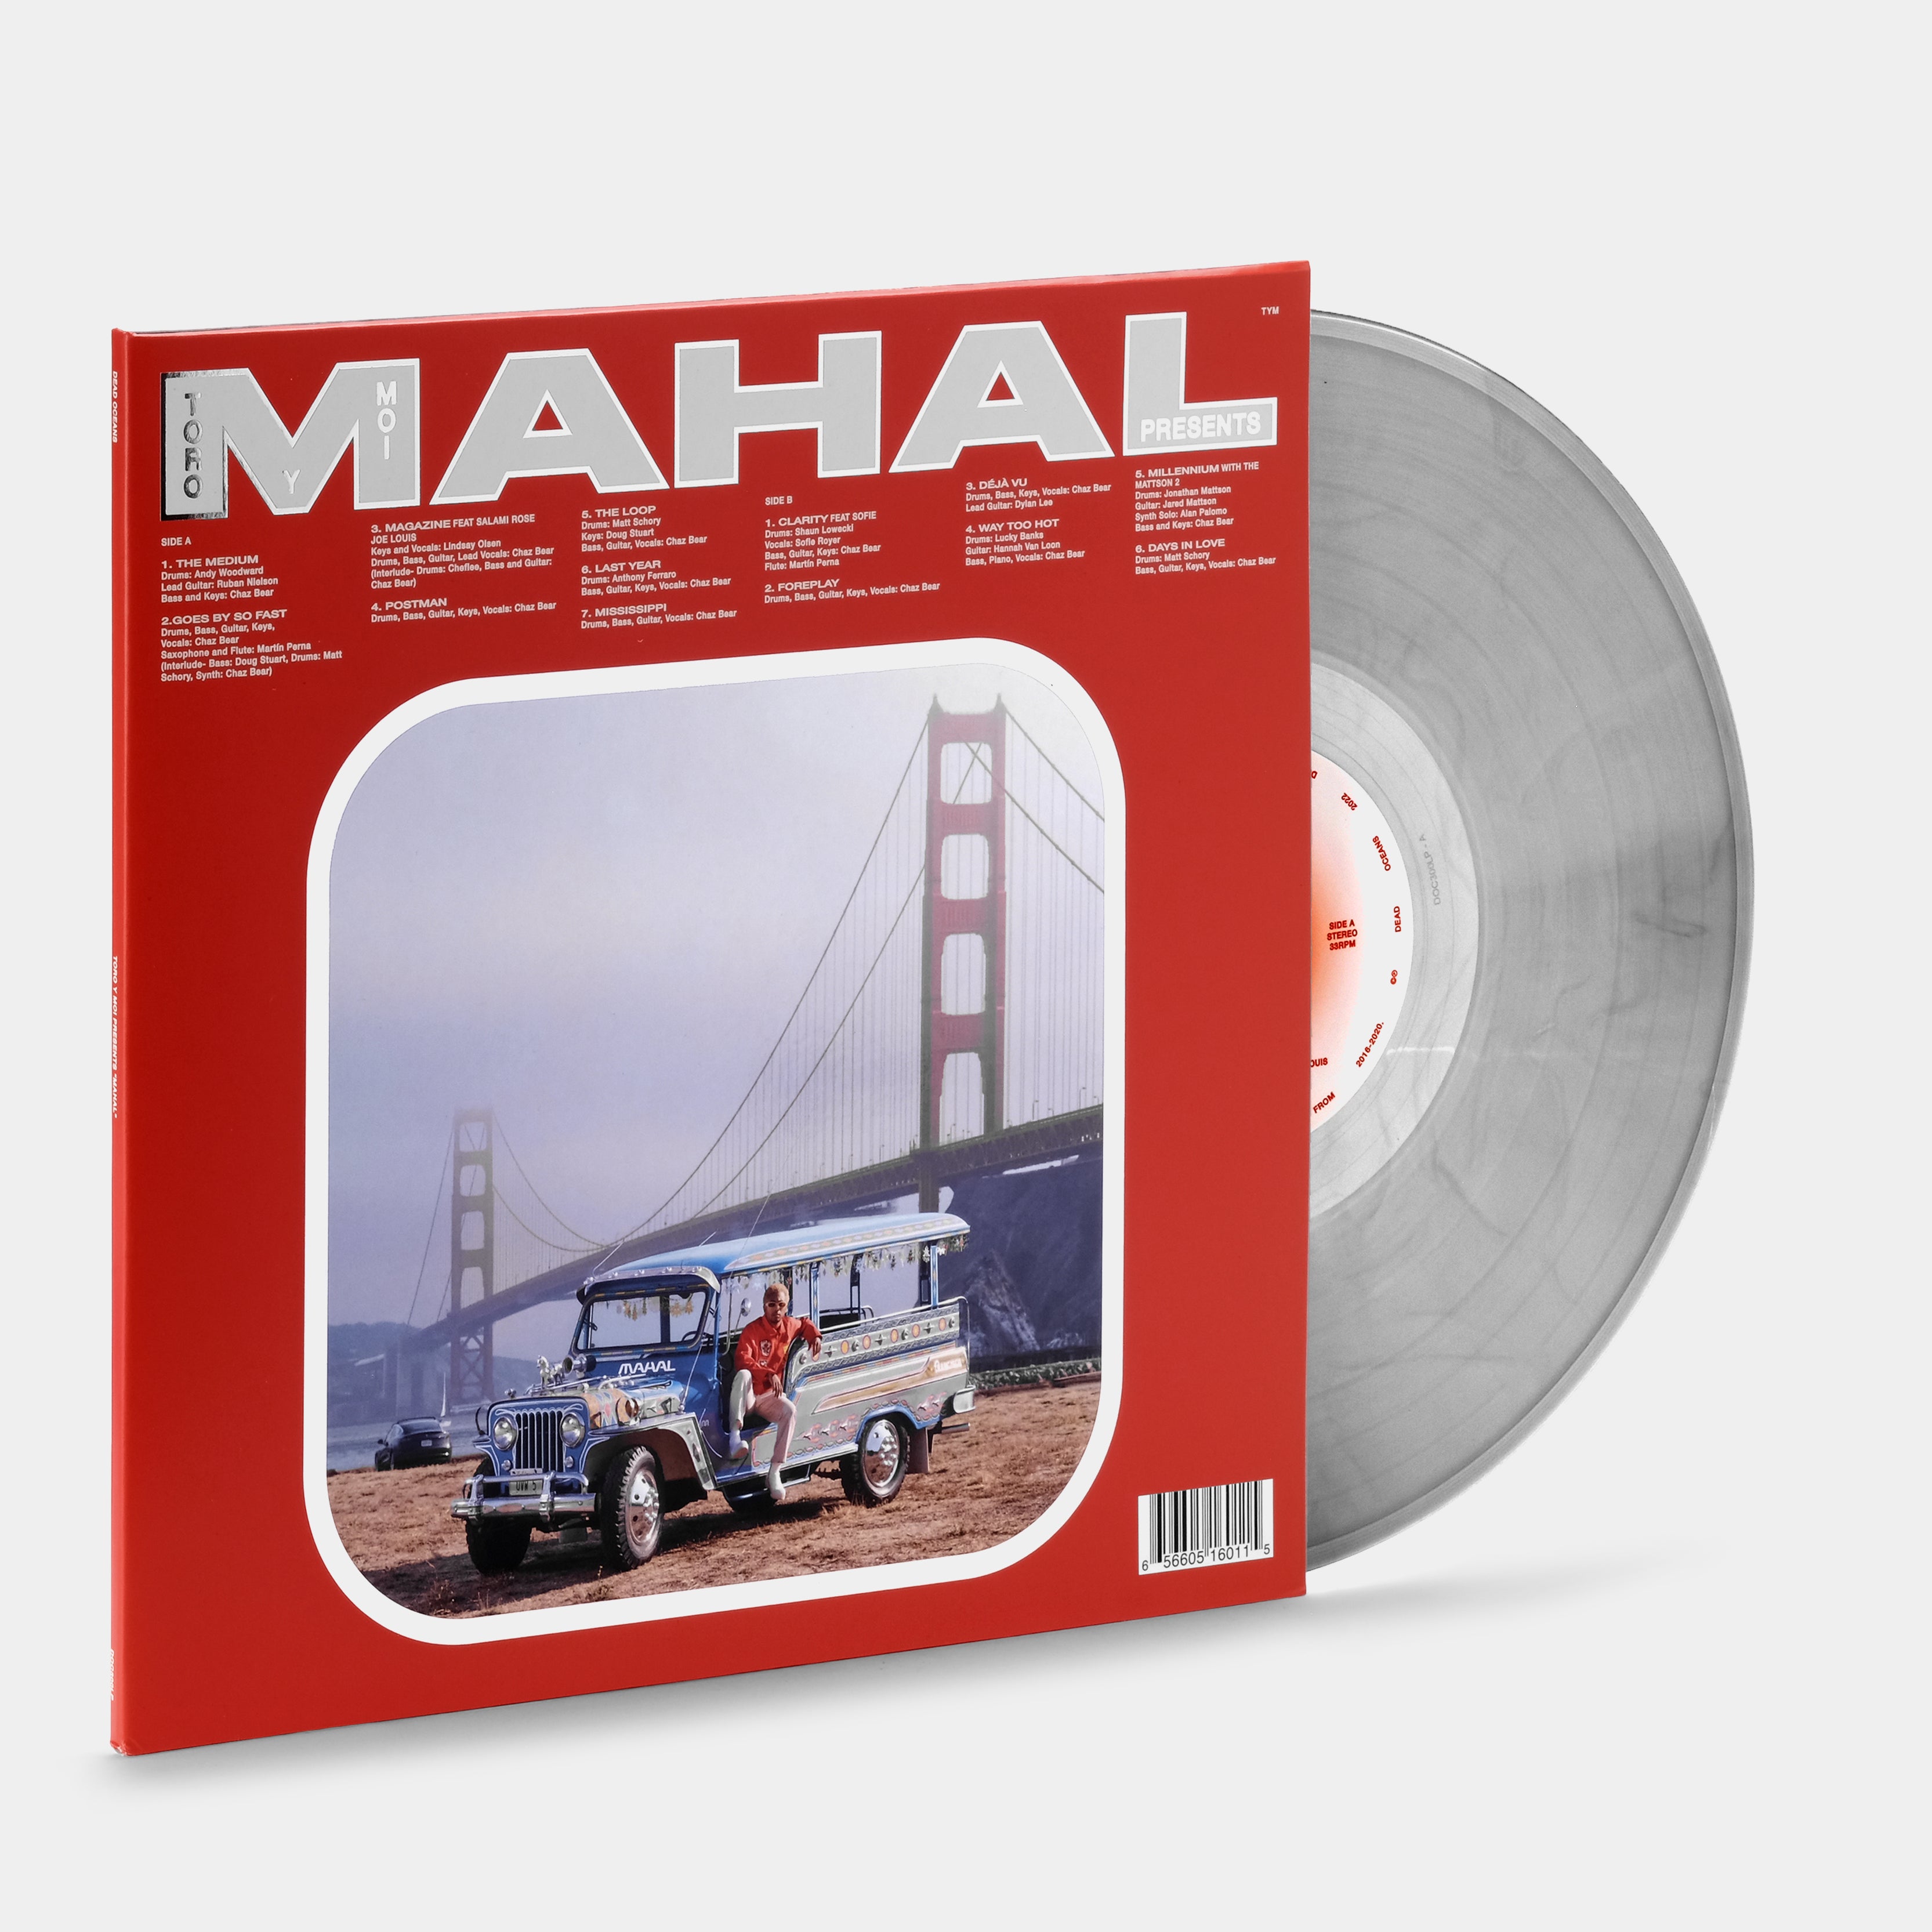 Toro y Moi - Mahal LP Silver Vinyl Record